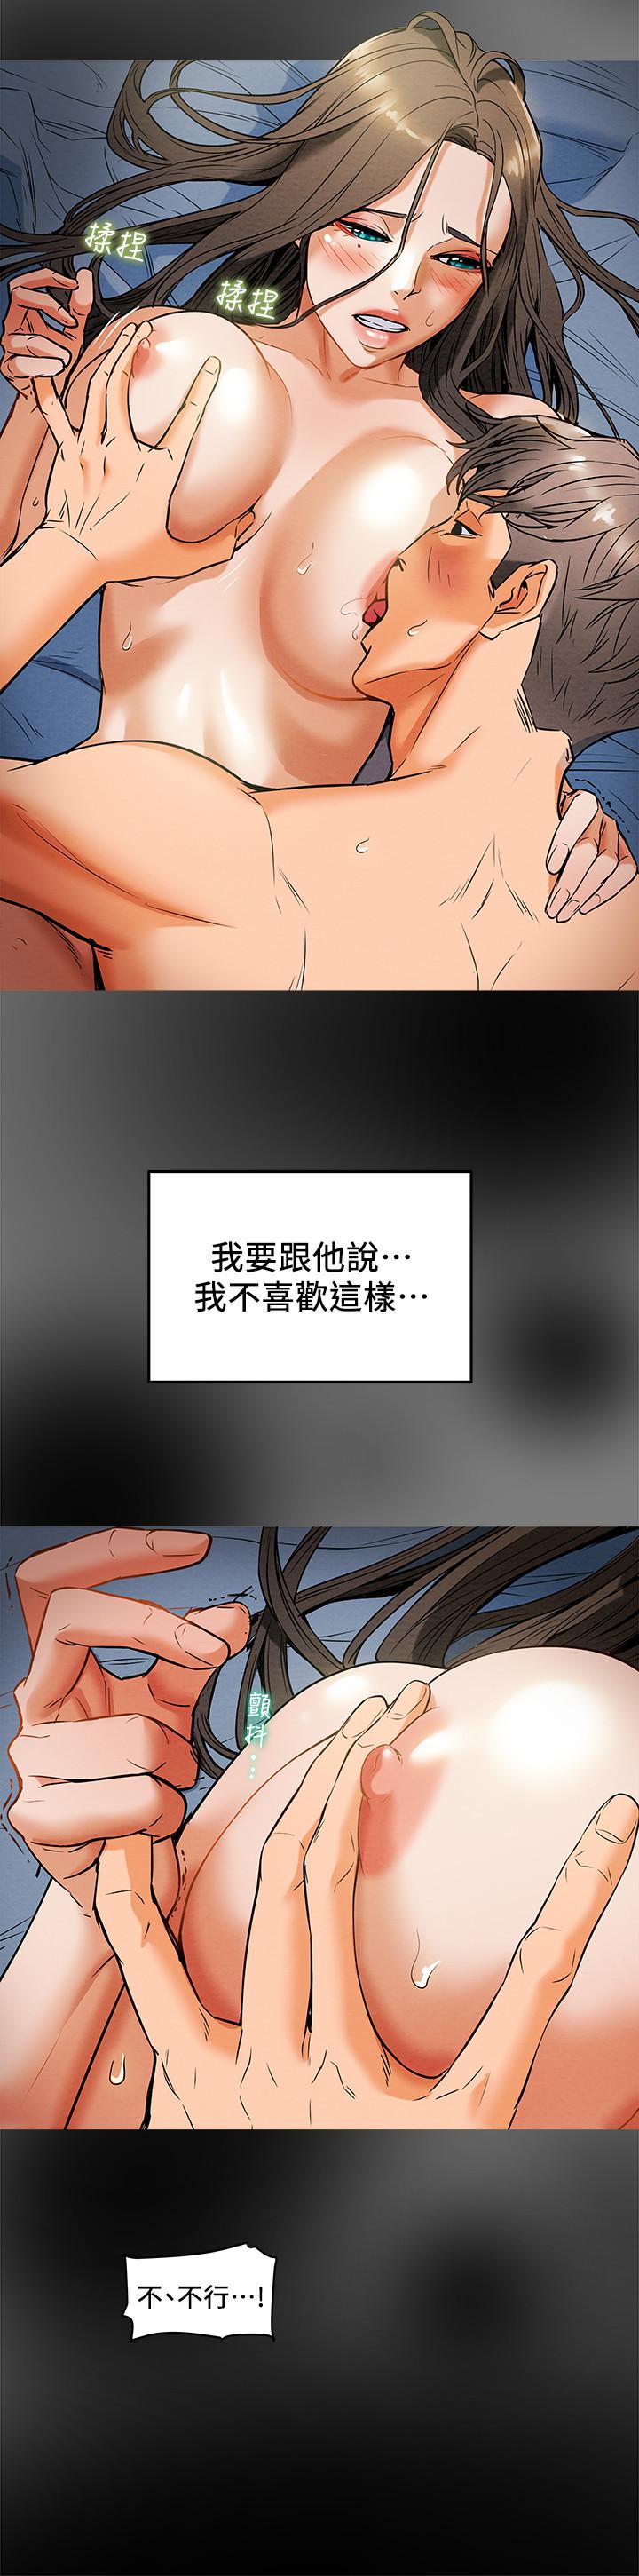 韩国污漫画 純情女攻略計劃 第8话-开始玩淫荡游戏的两人 7